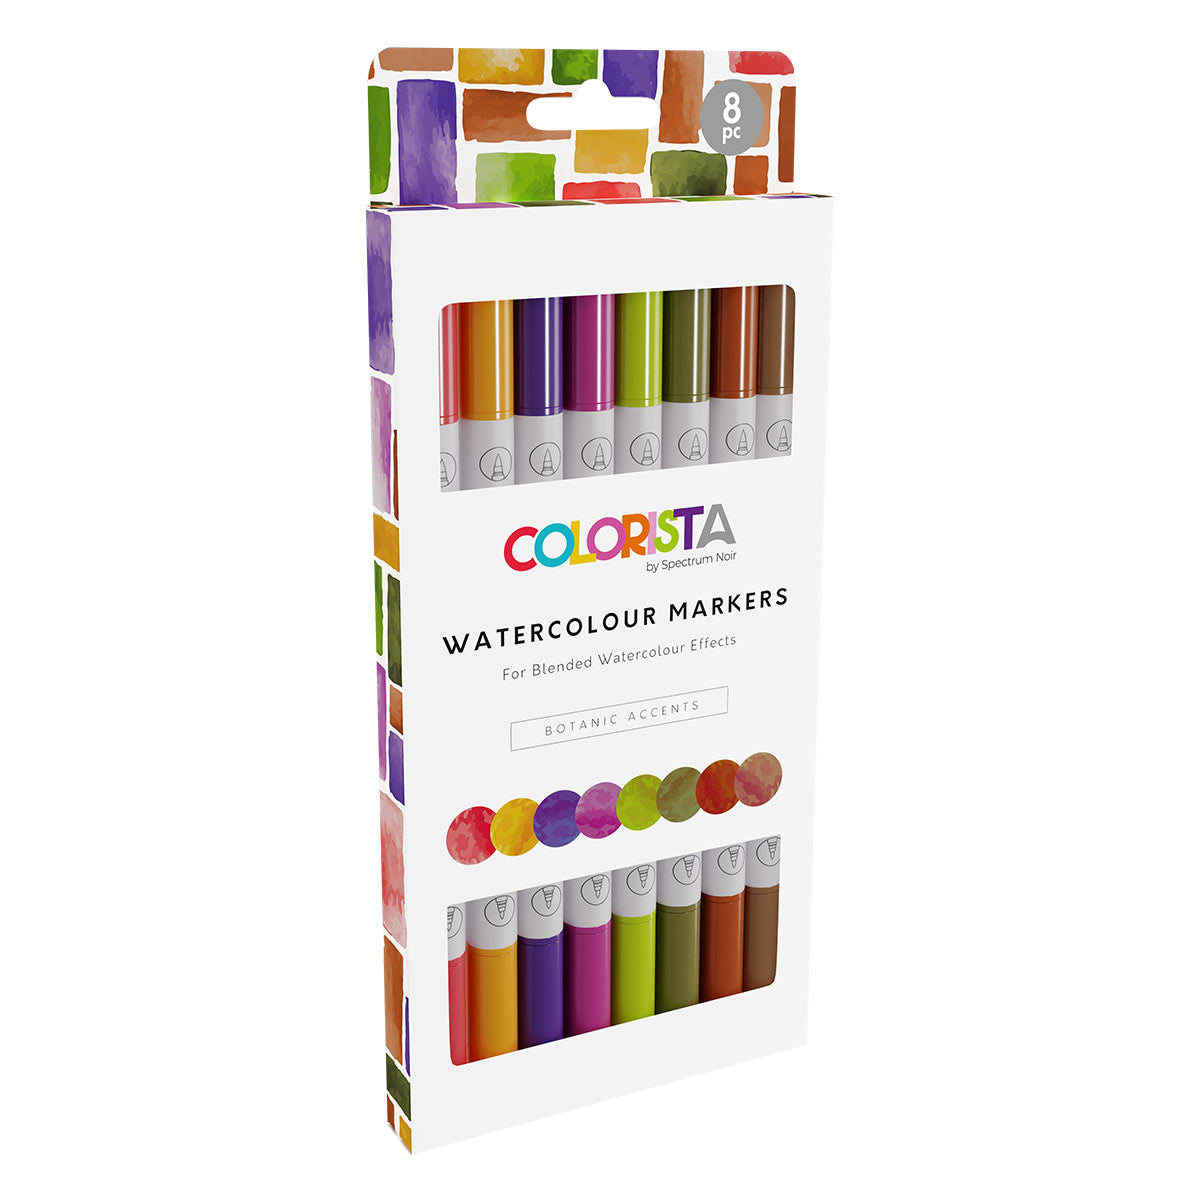 Spectrum Noir Colorista - Watercolour Markers (8 set) Botanic Accents